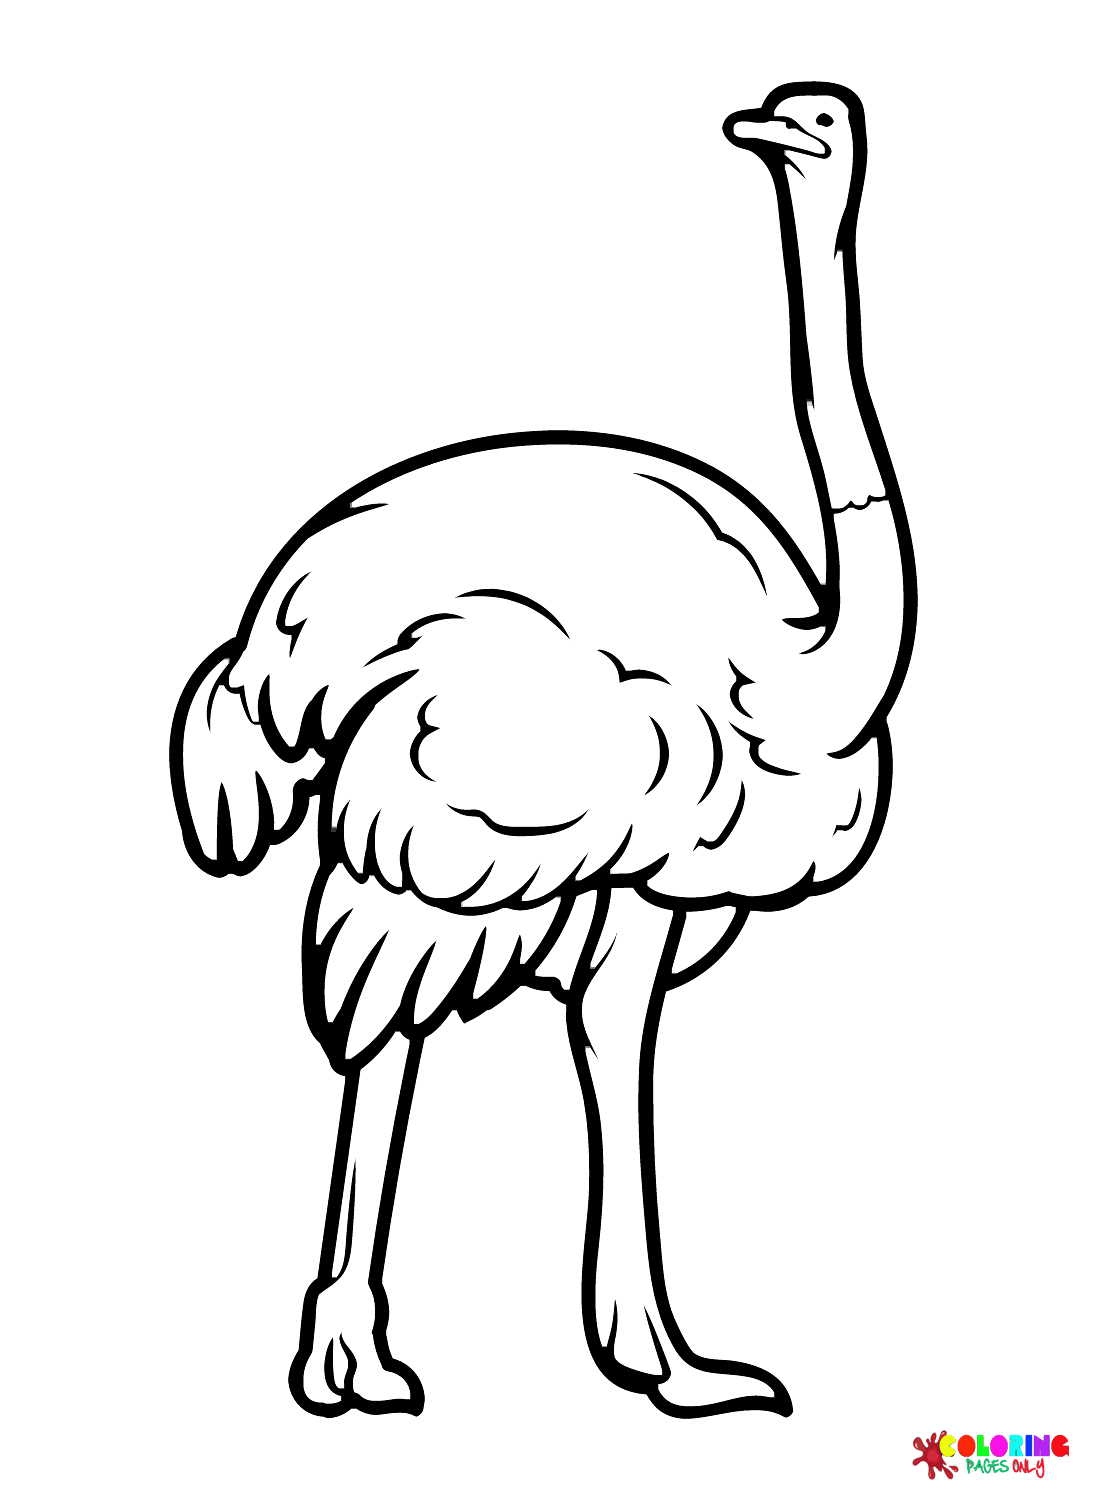 Бесплатная распечатка страуса от Ostrich